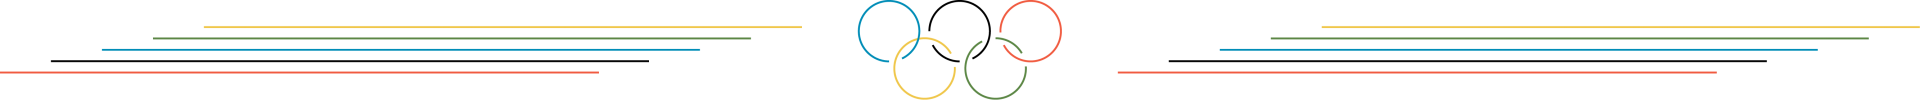 Como eram os Jogos Olímpicos da Antiguidade, que deram origem às Olimpíadas, olimpiadas-2021